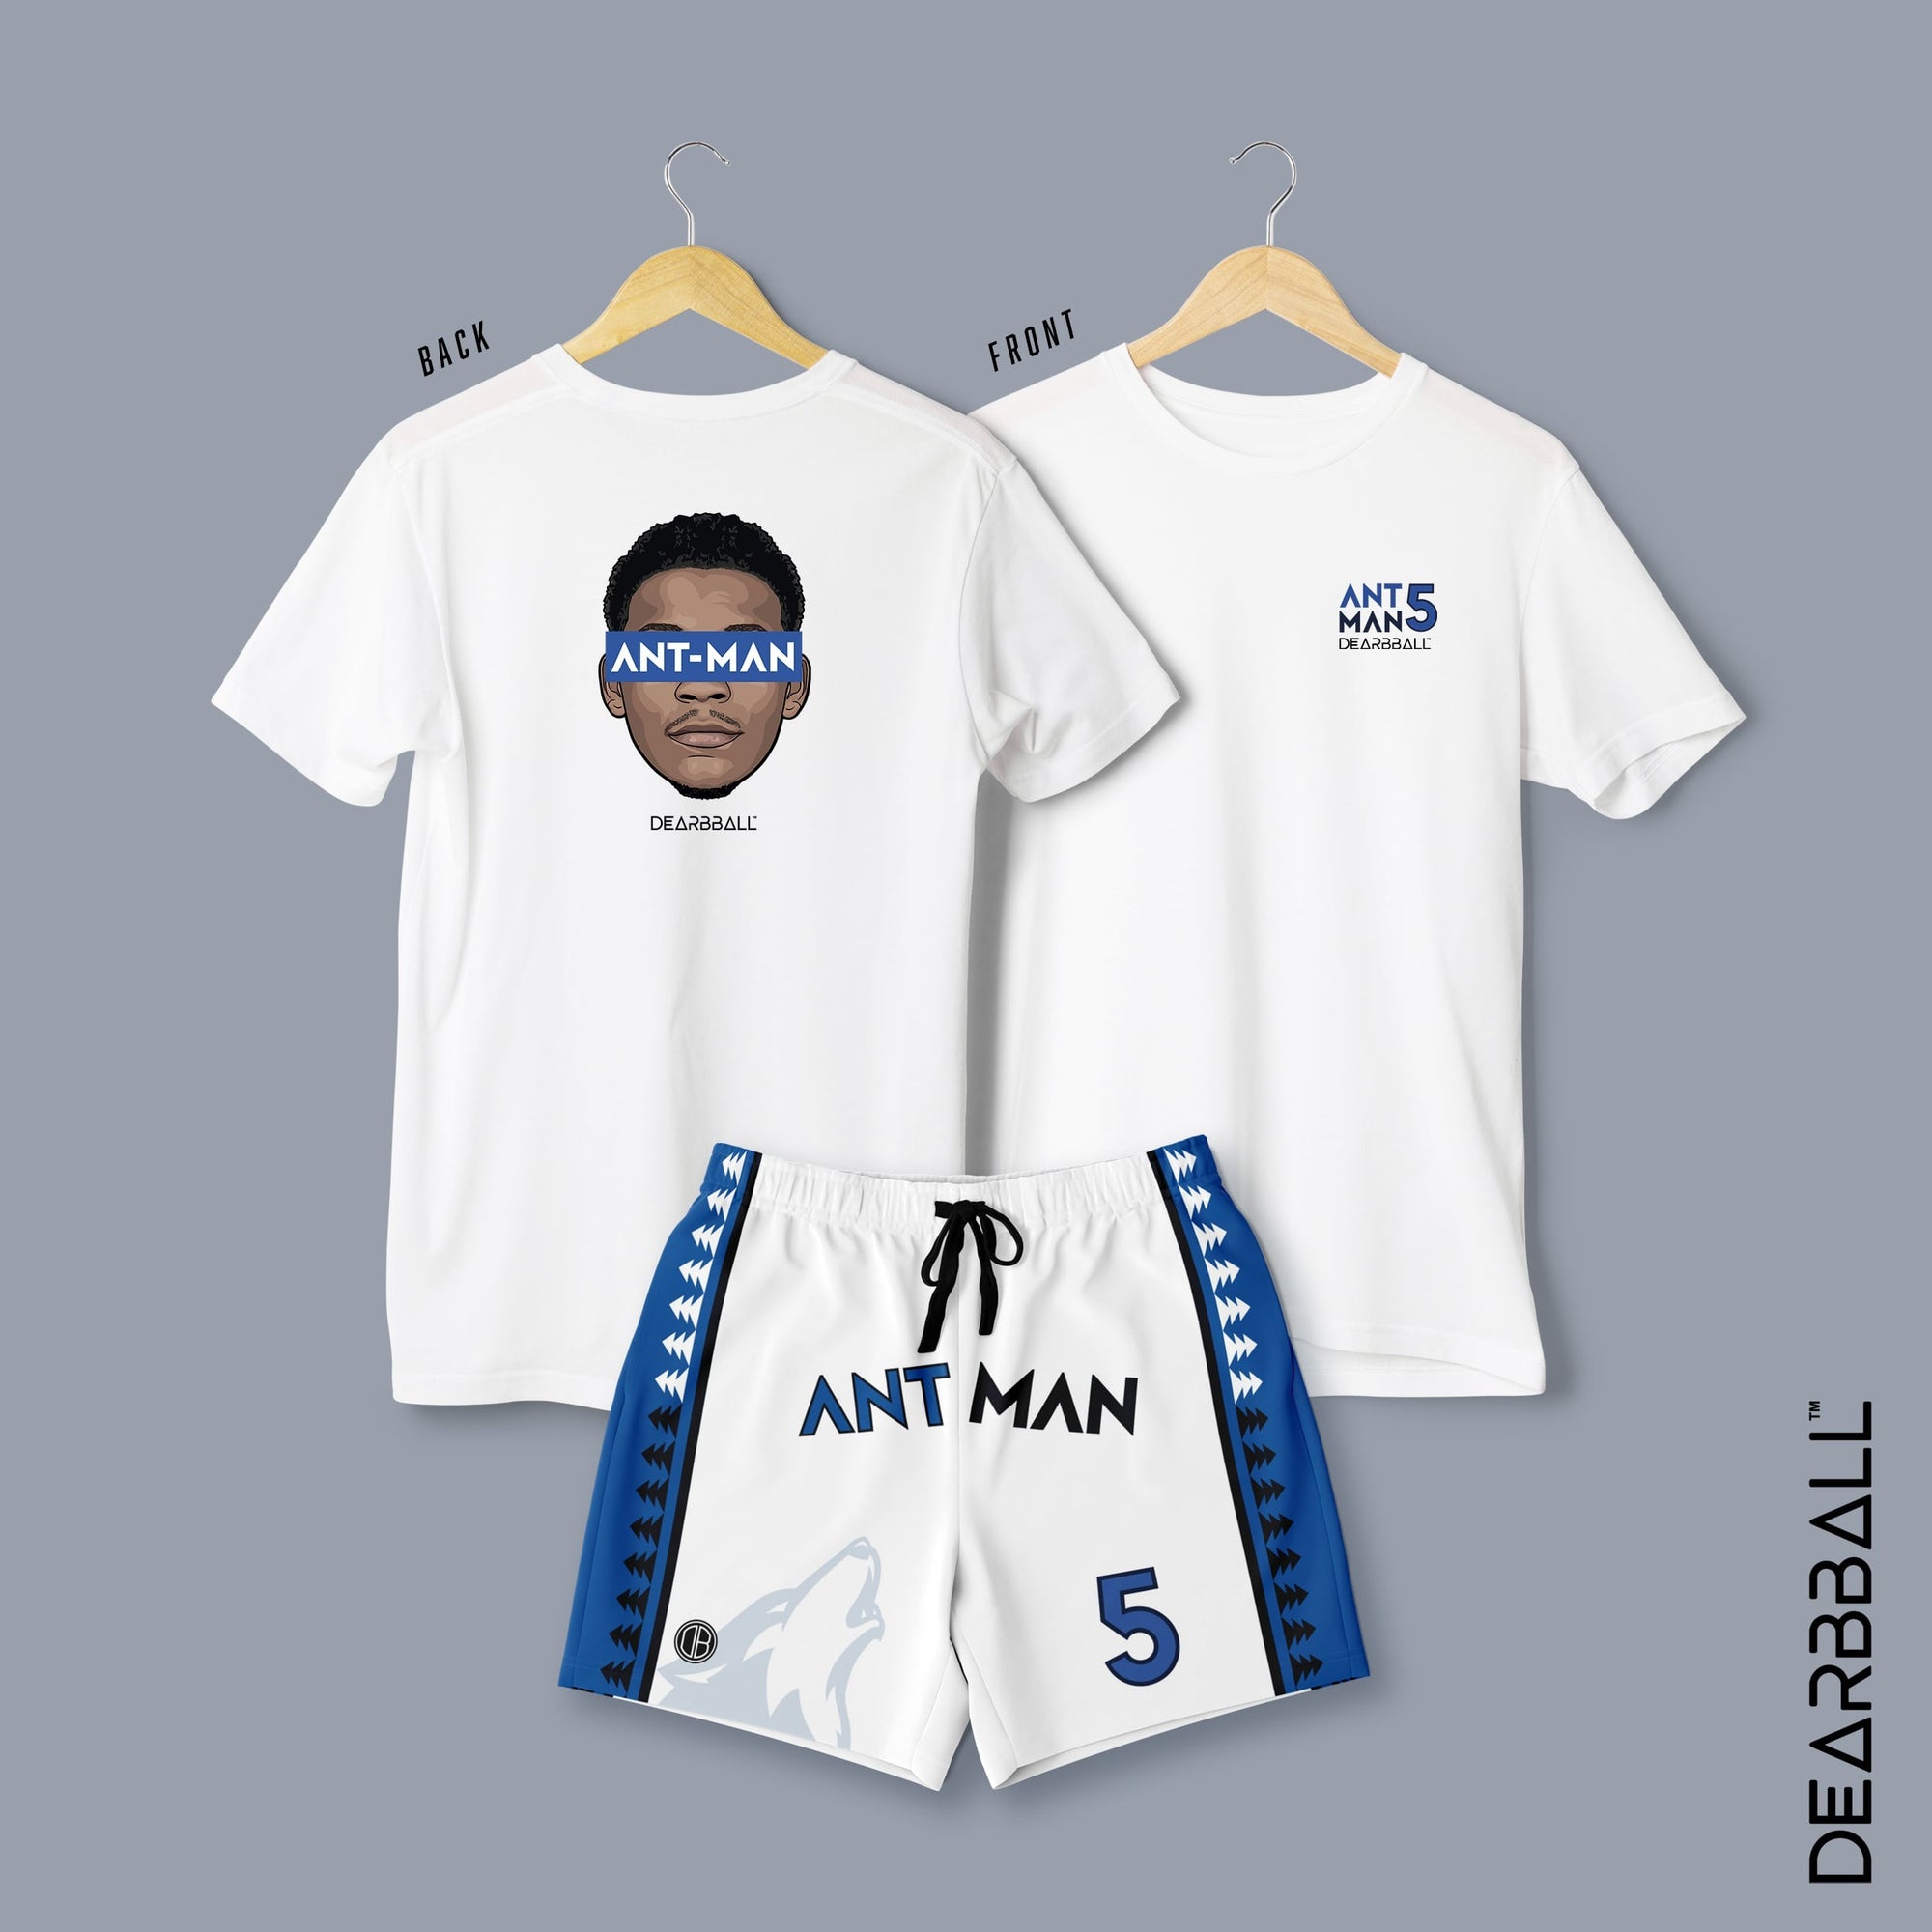 DearBBall Ensemble Short T-Shirt - ANT-MAN Premium White Edition